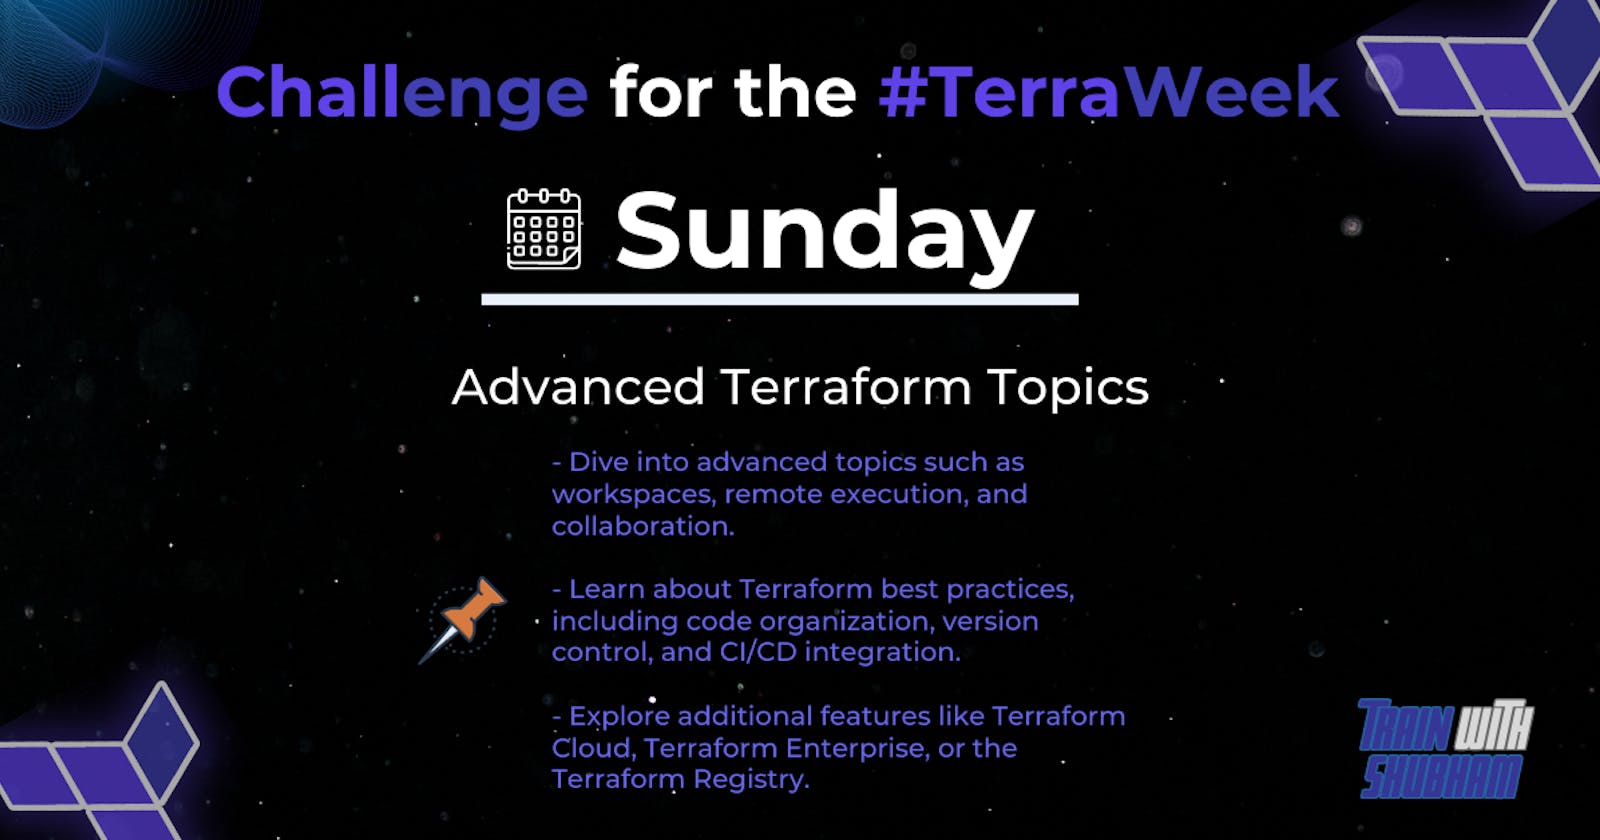 Terraweek Day07